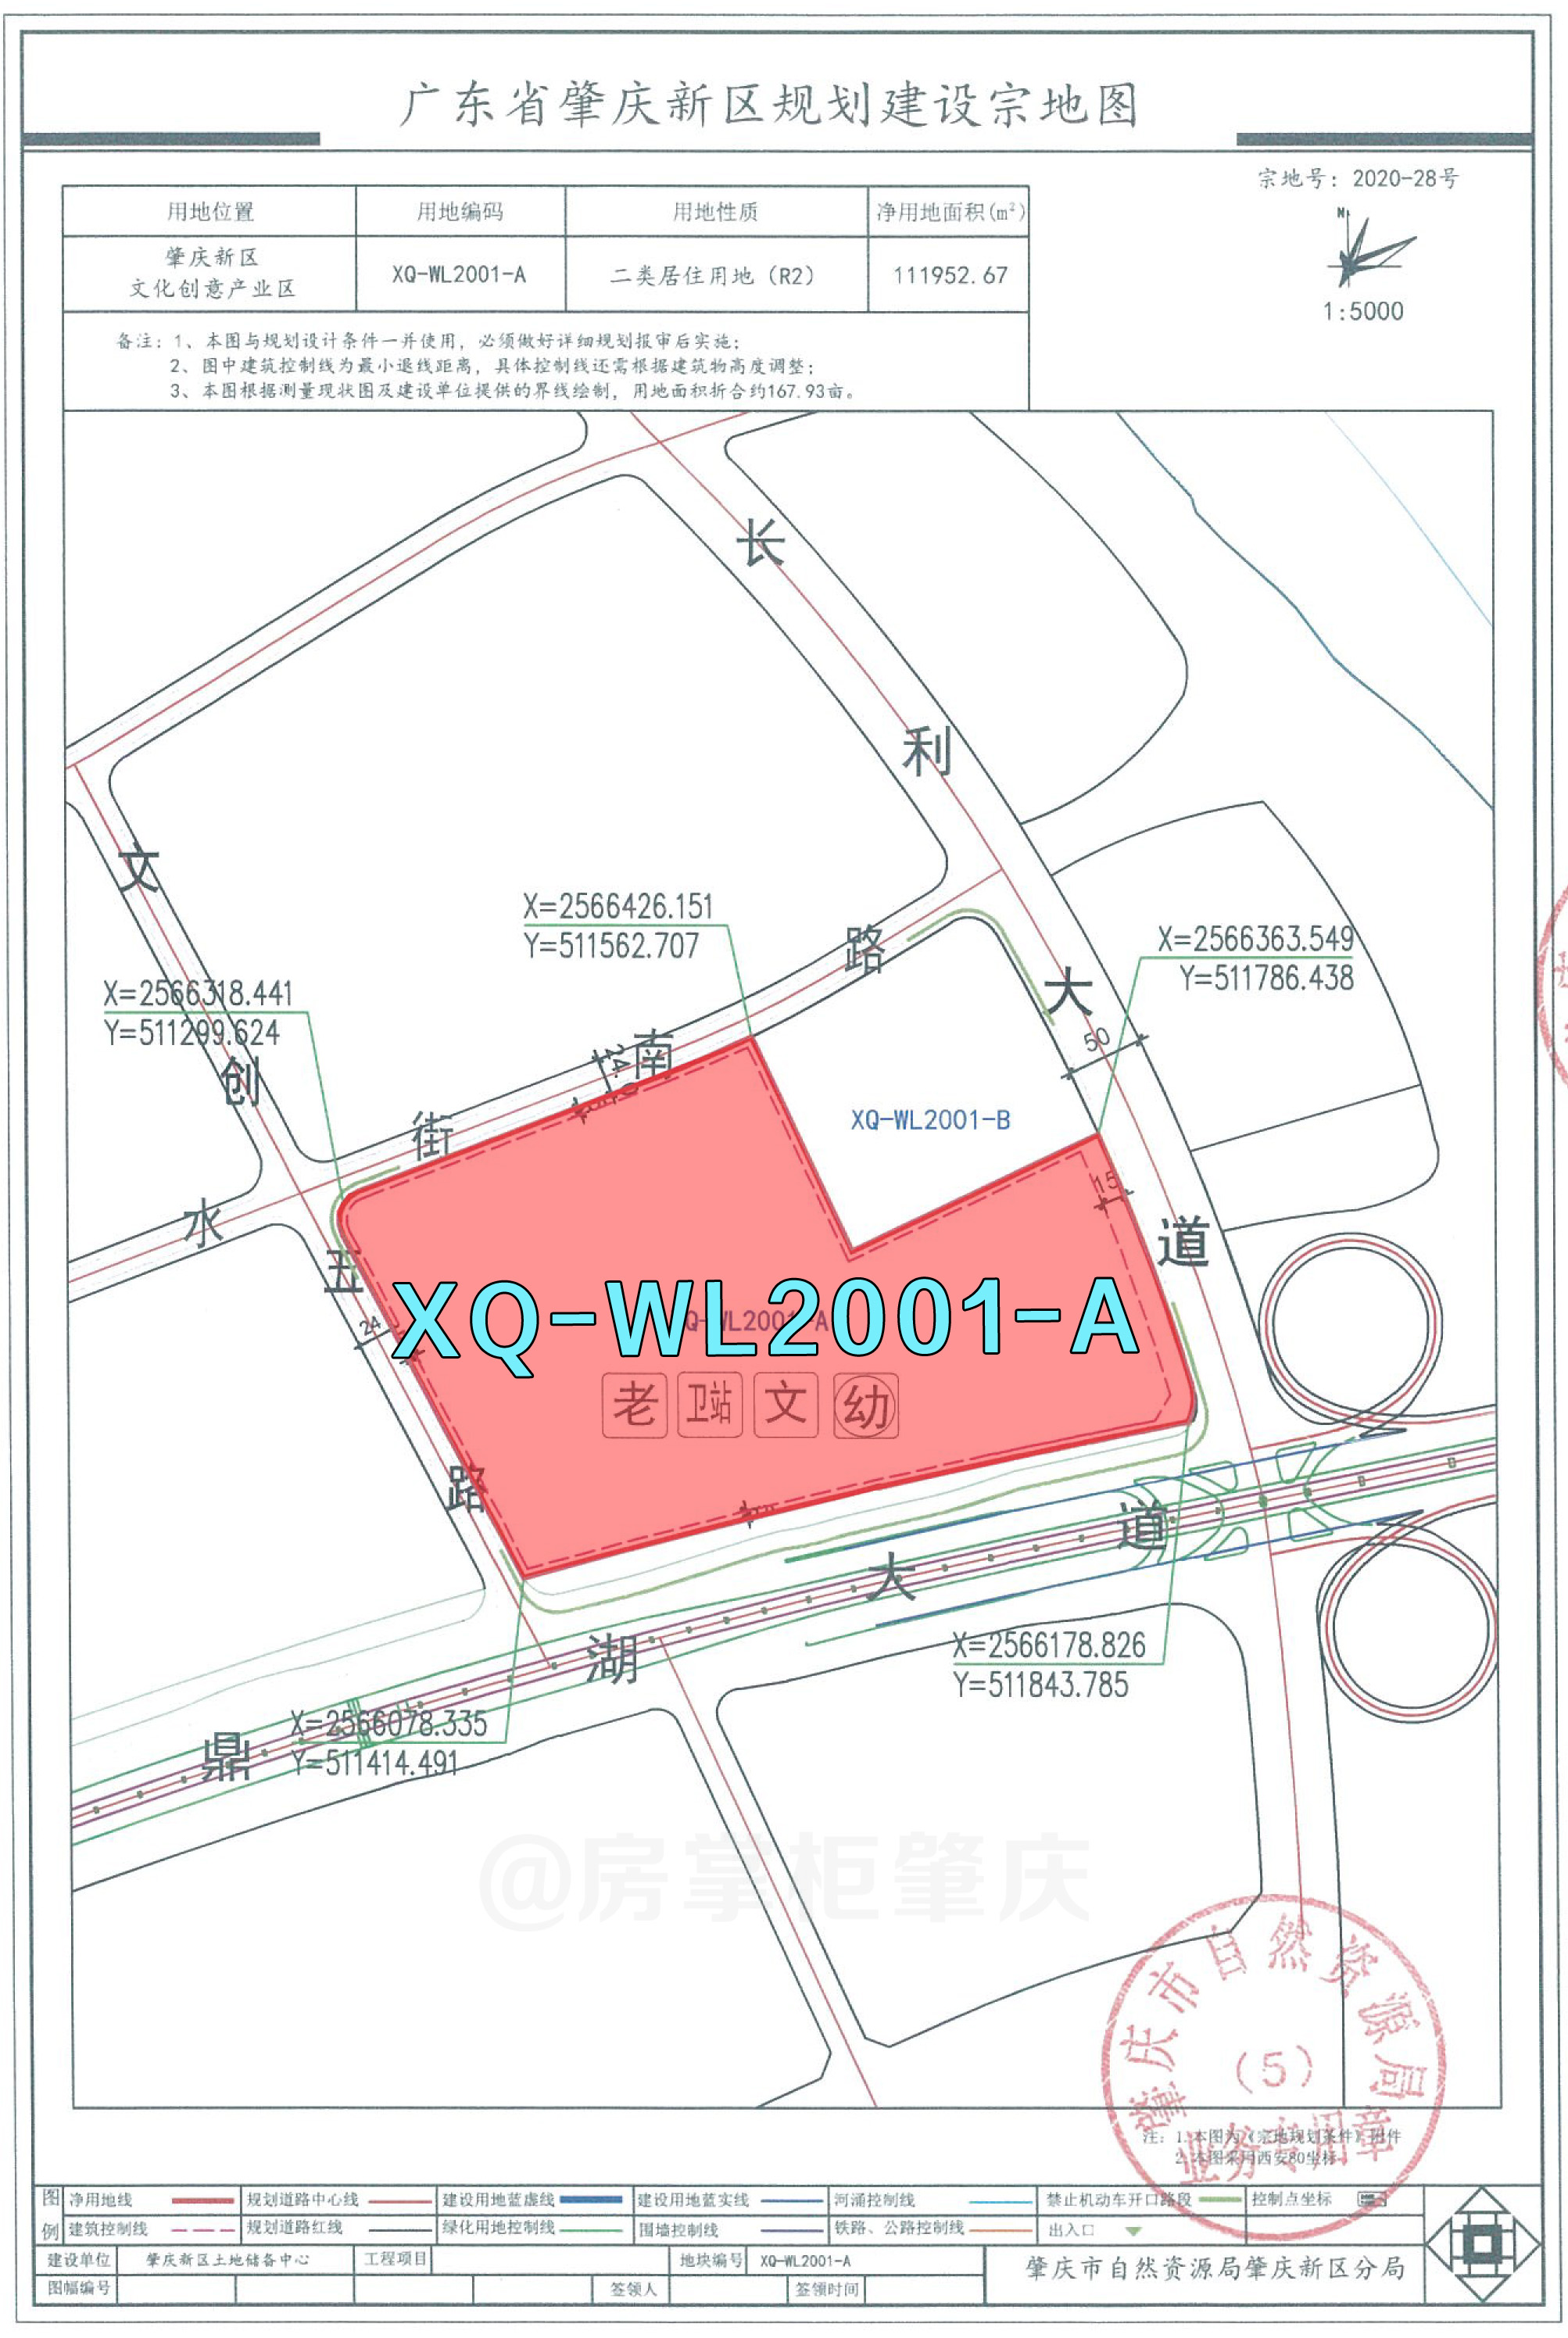 广东省肇庆市新区规划建设宗地图、宗地规划条件-2.jpg